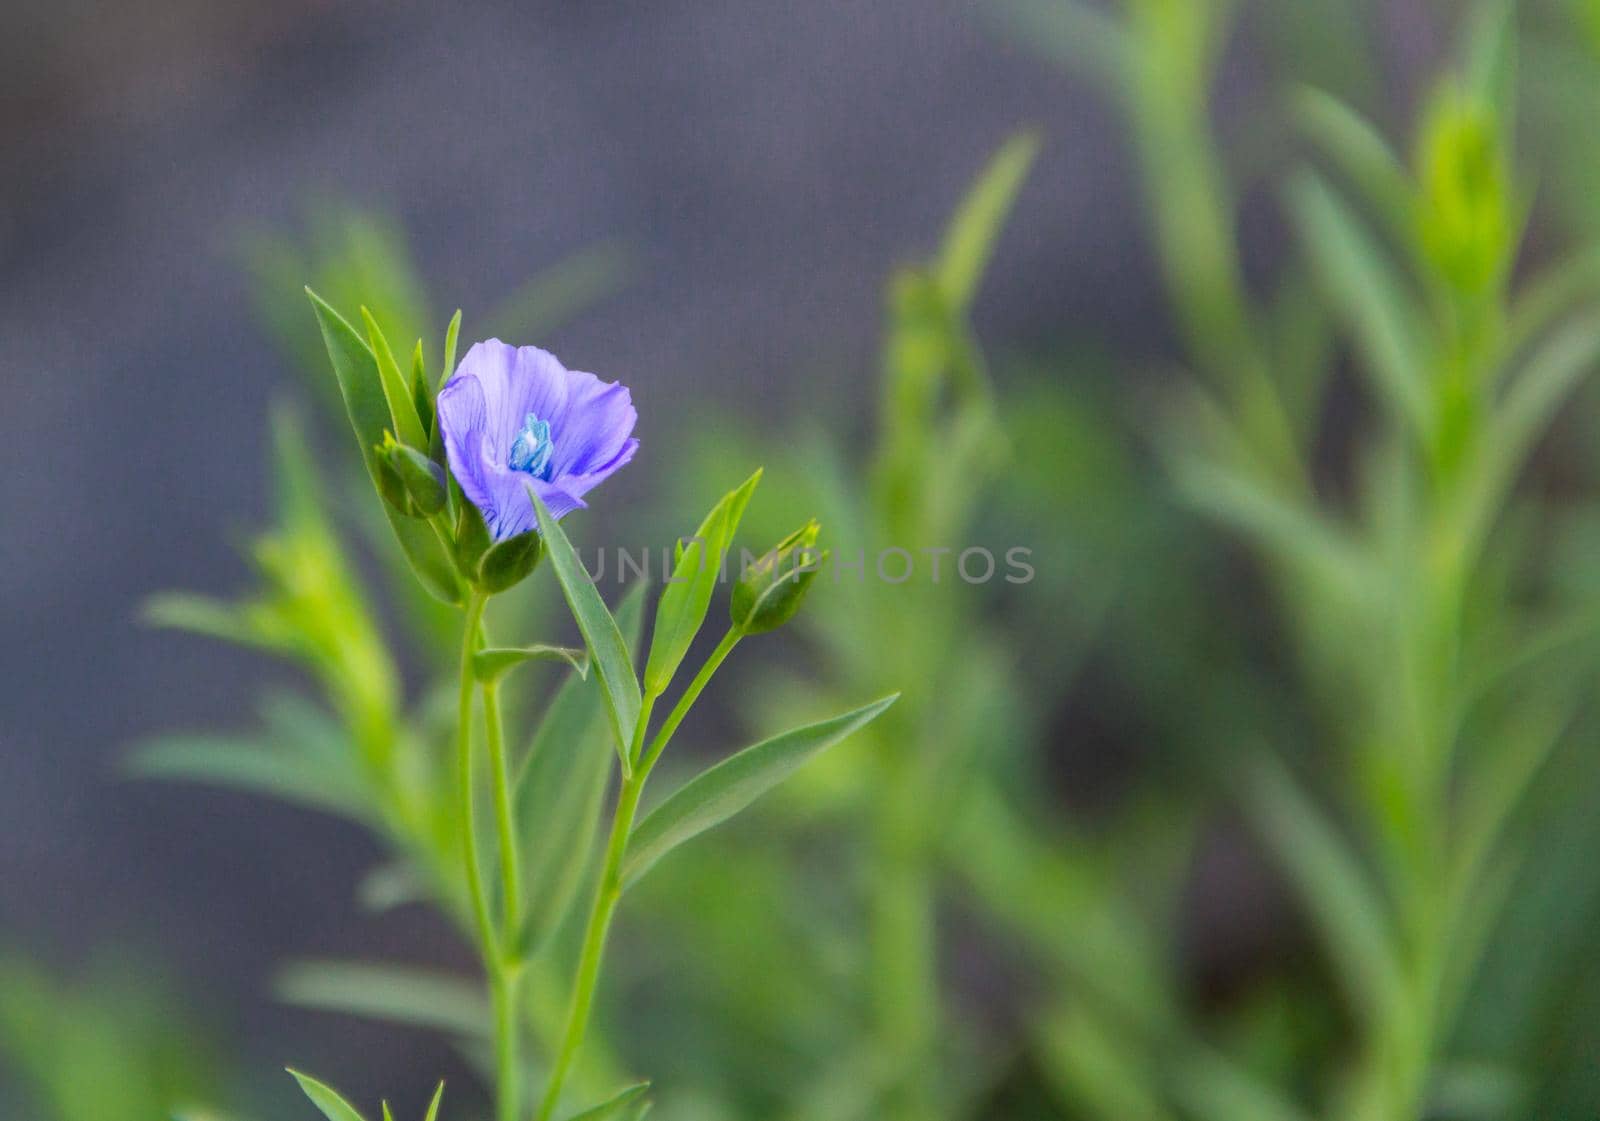 a little flax flower in the organic garden